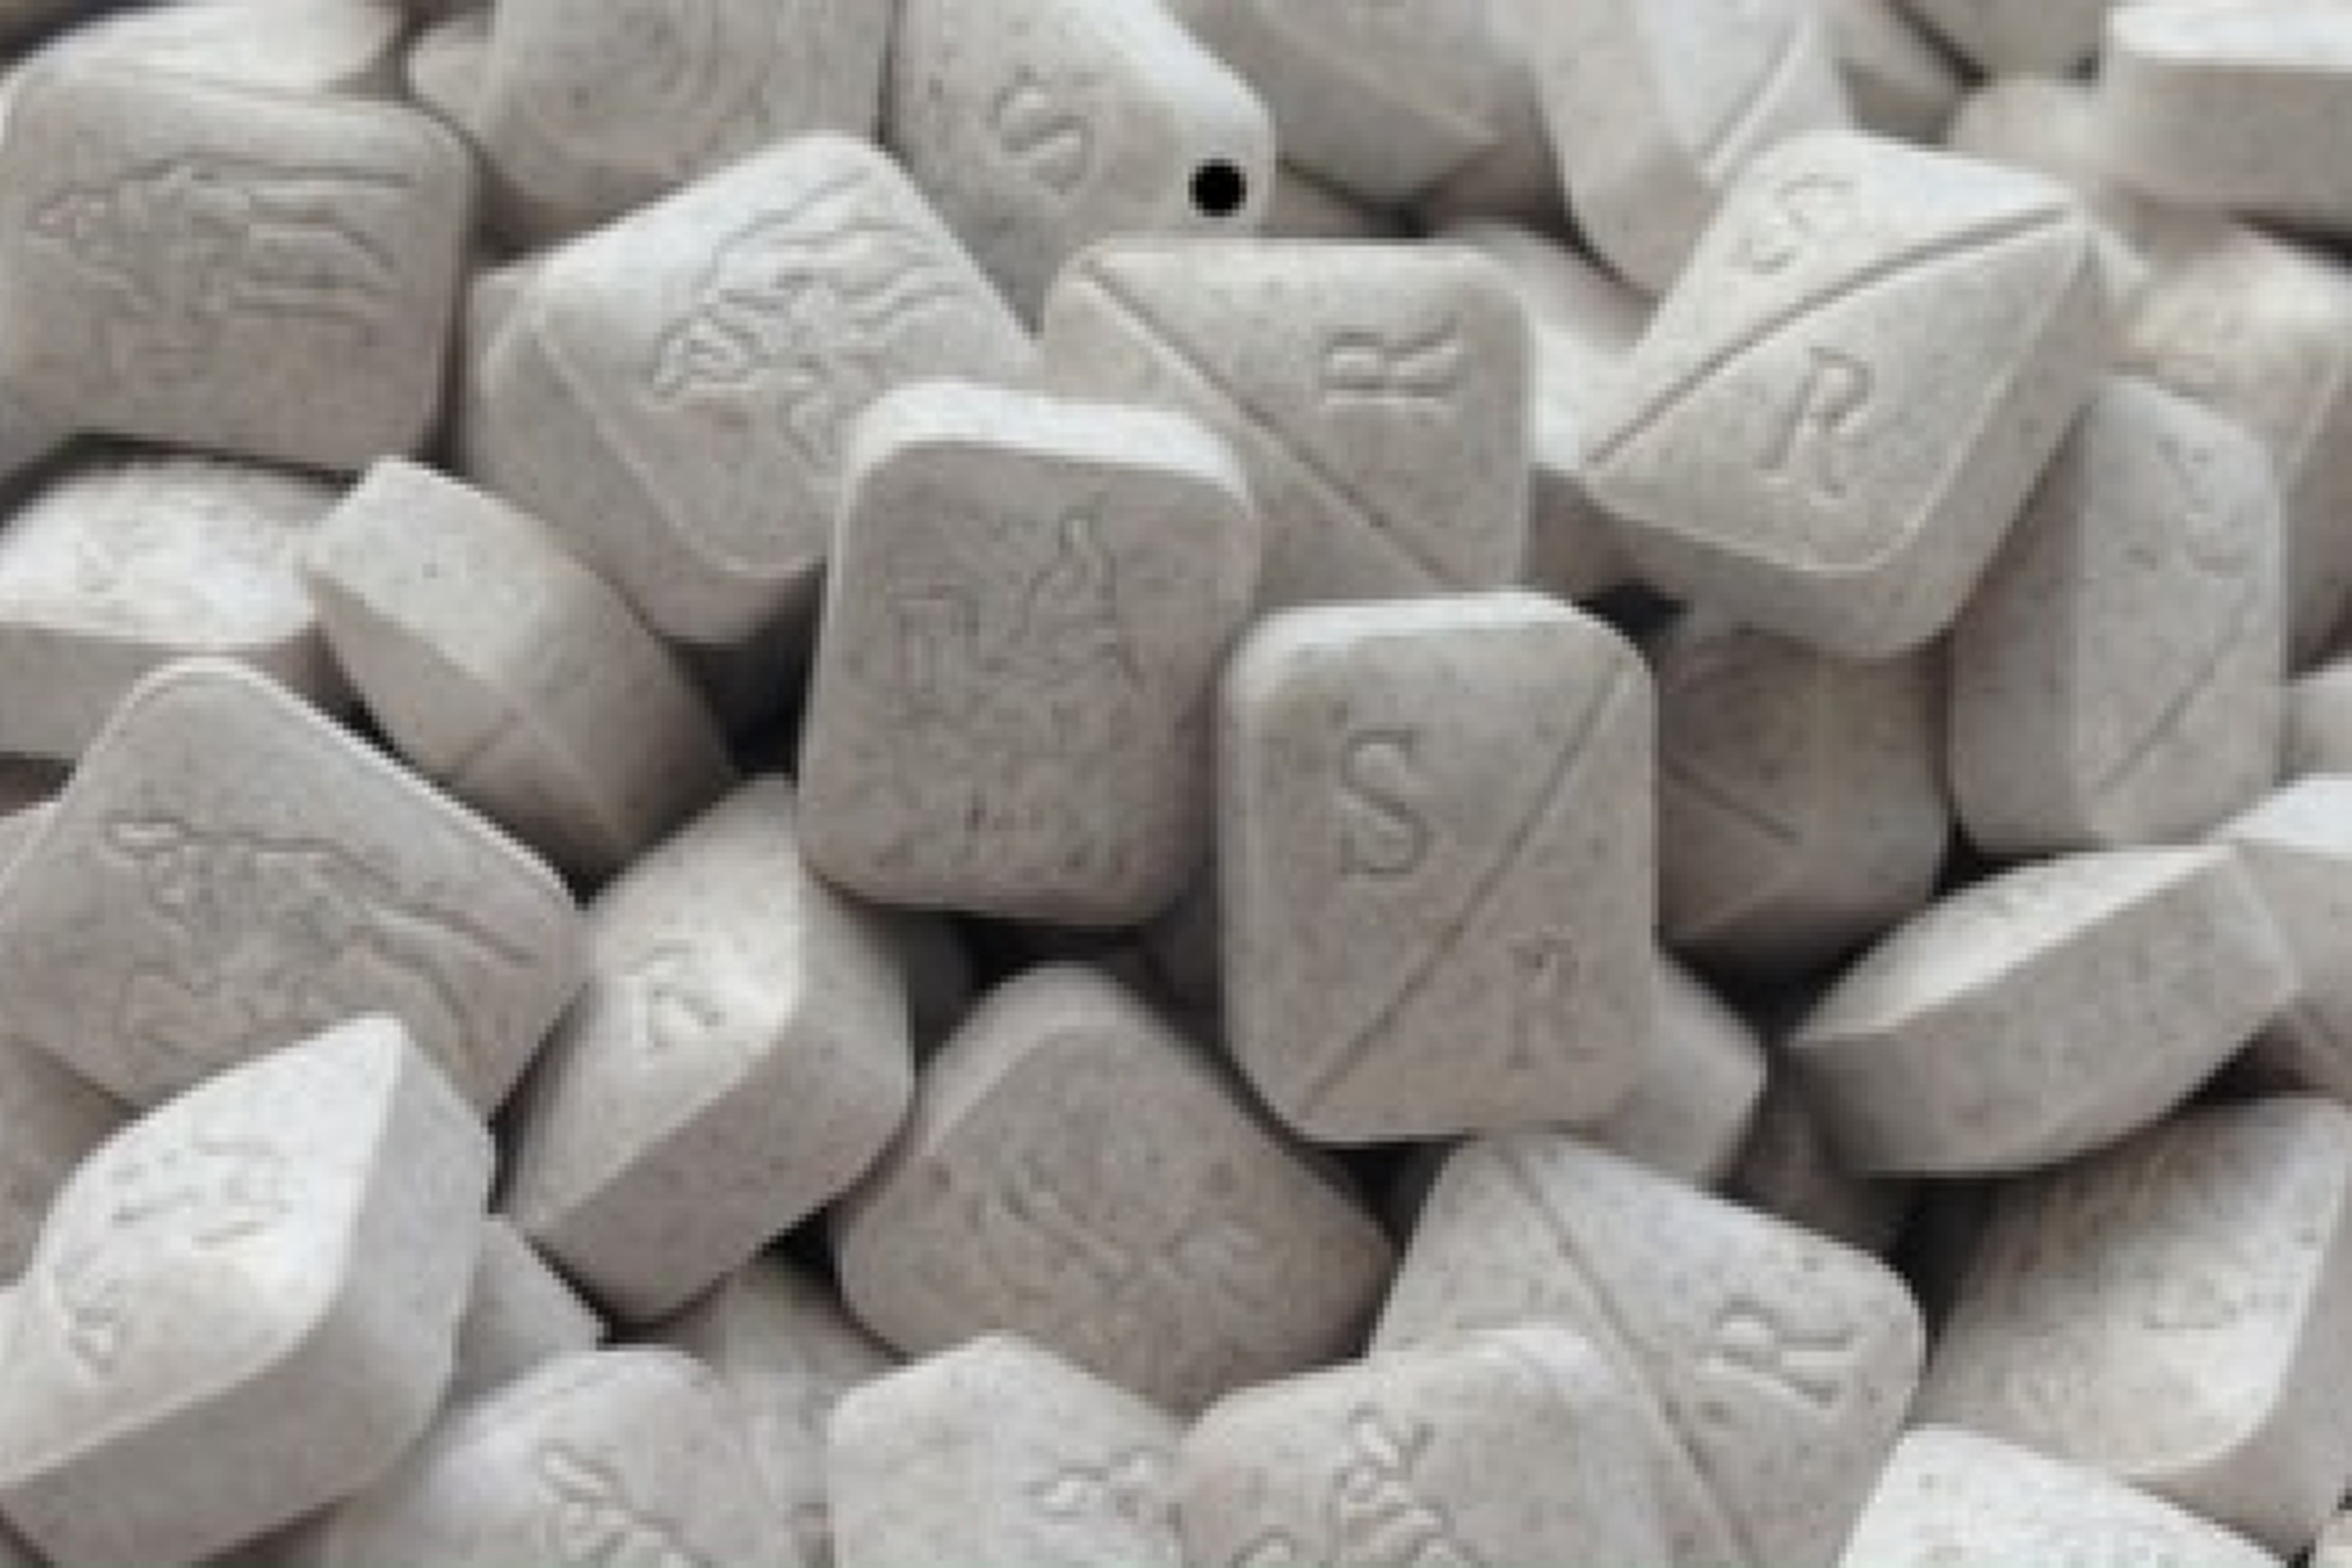 TheHeineken Silk Road ecstasy pills